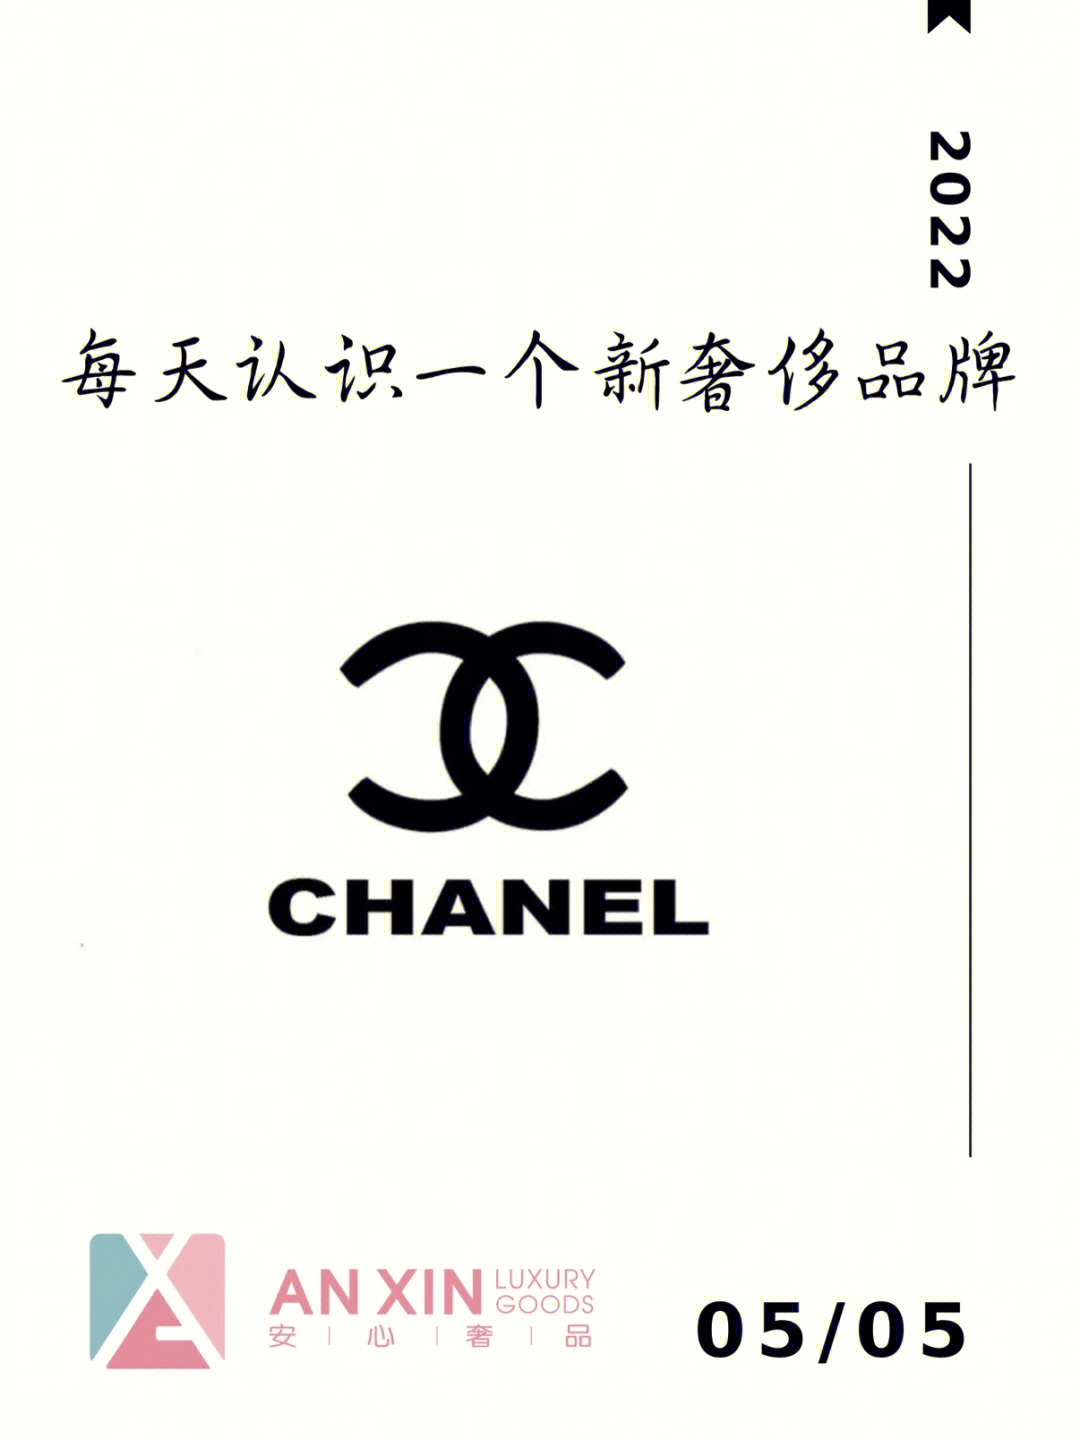 香奈儿logo的历史演变图片